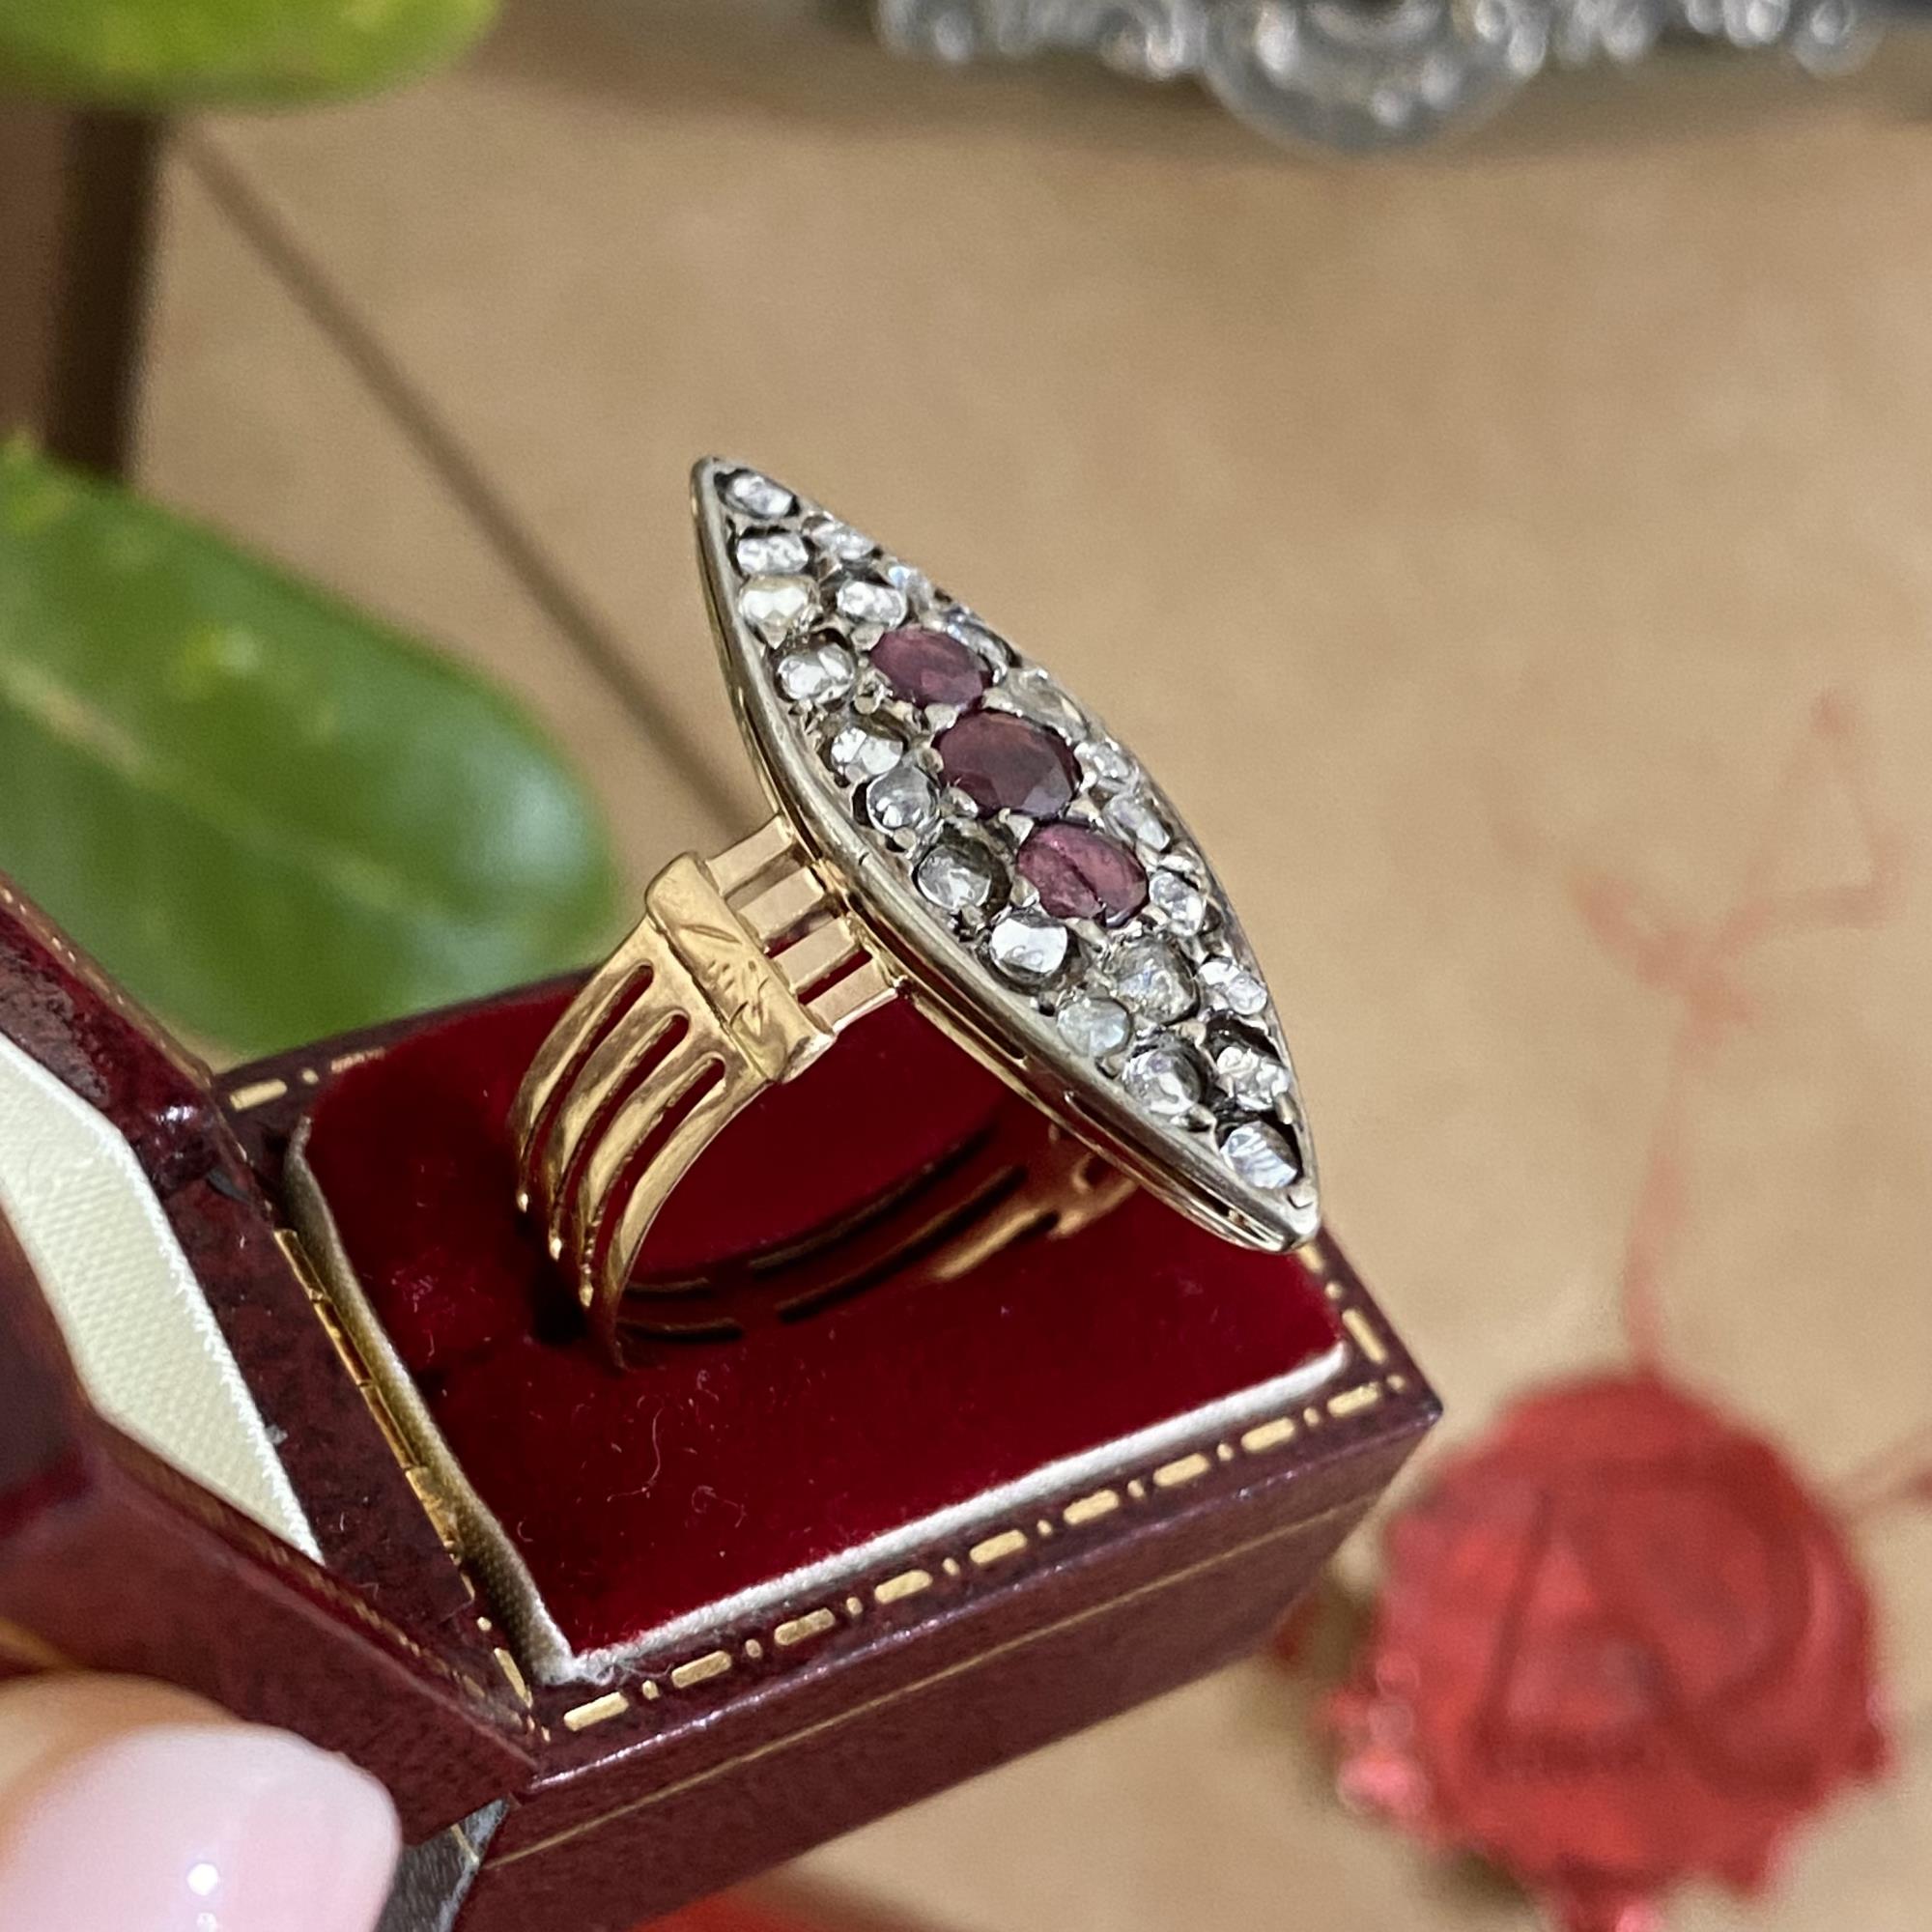 Anello antico navette con rubini e diamanti taglio antico, oro 18kt e argento.